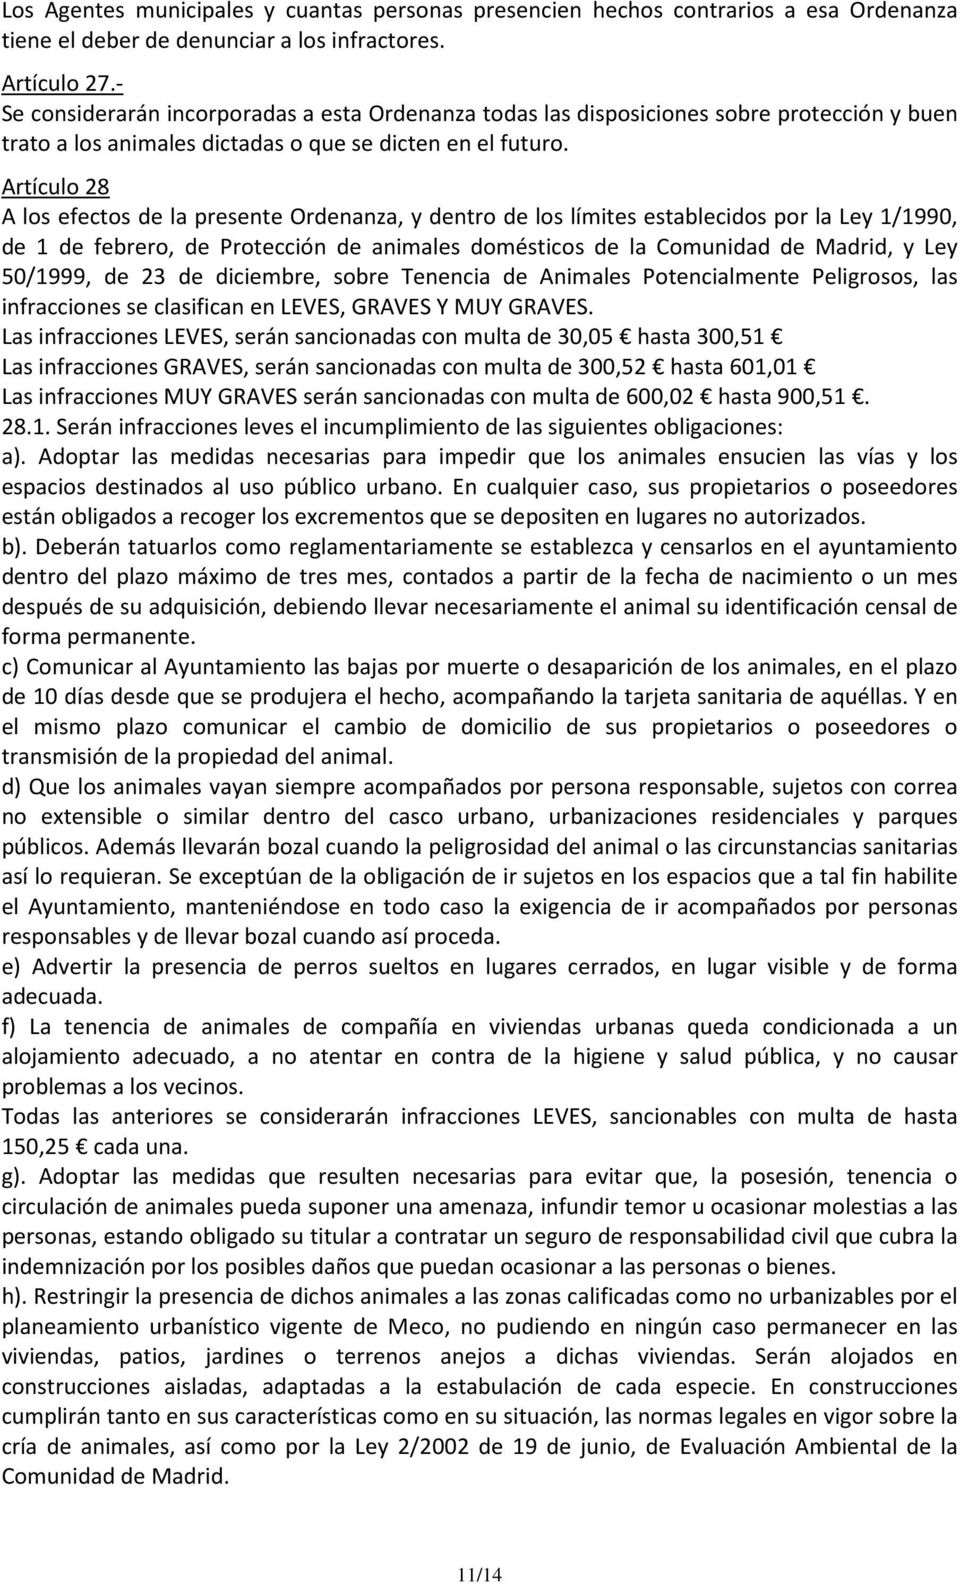 Artículo 28 A los efectos de la presente Ordenanza, y dentro de los límites establecidos por la Ley 1/1990, de 1 de febrero, de Protección de animales domésticos de la Comunidad de Madrid, y Ley